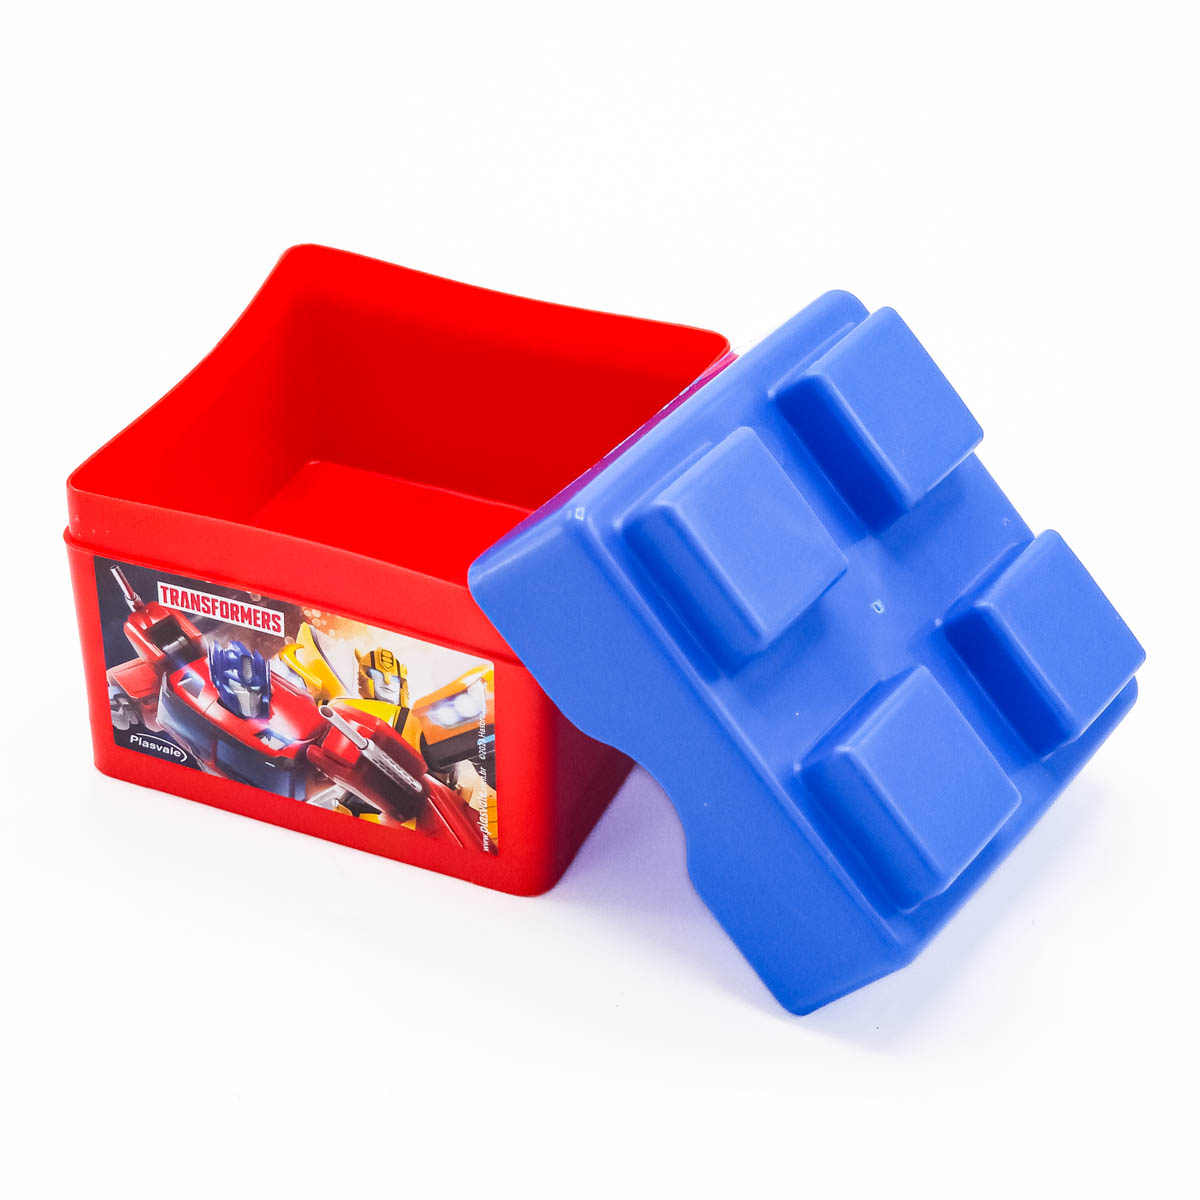 Imagem do produto: Pote de Encaixe Transformers 